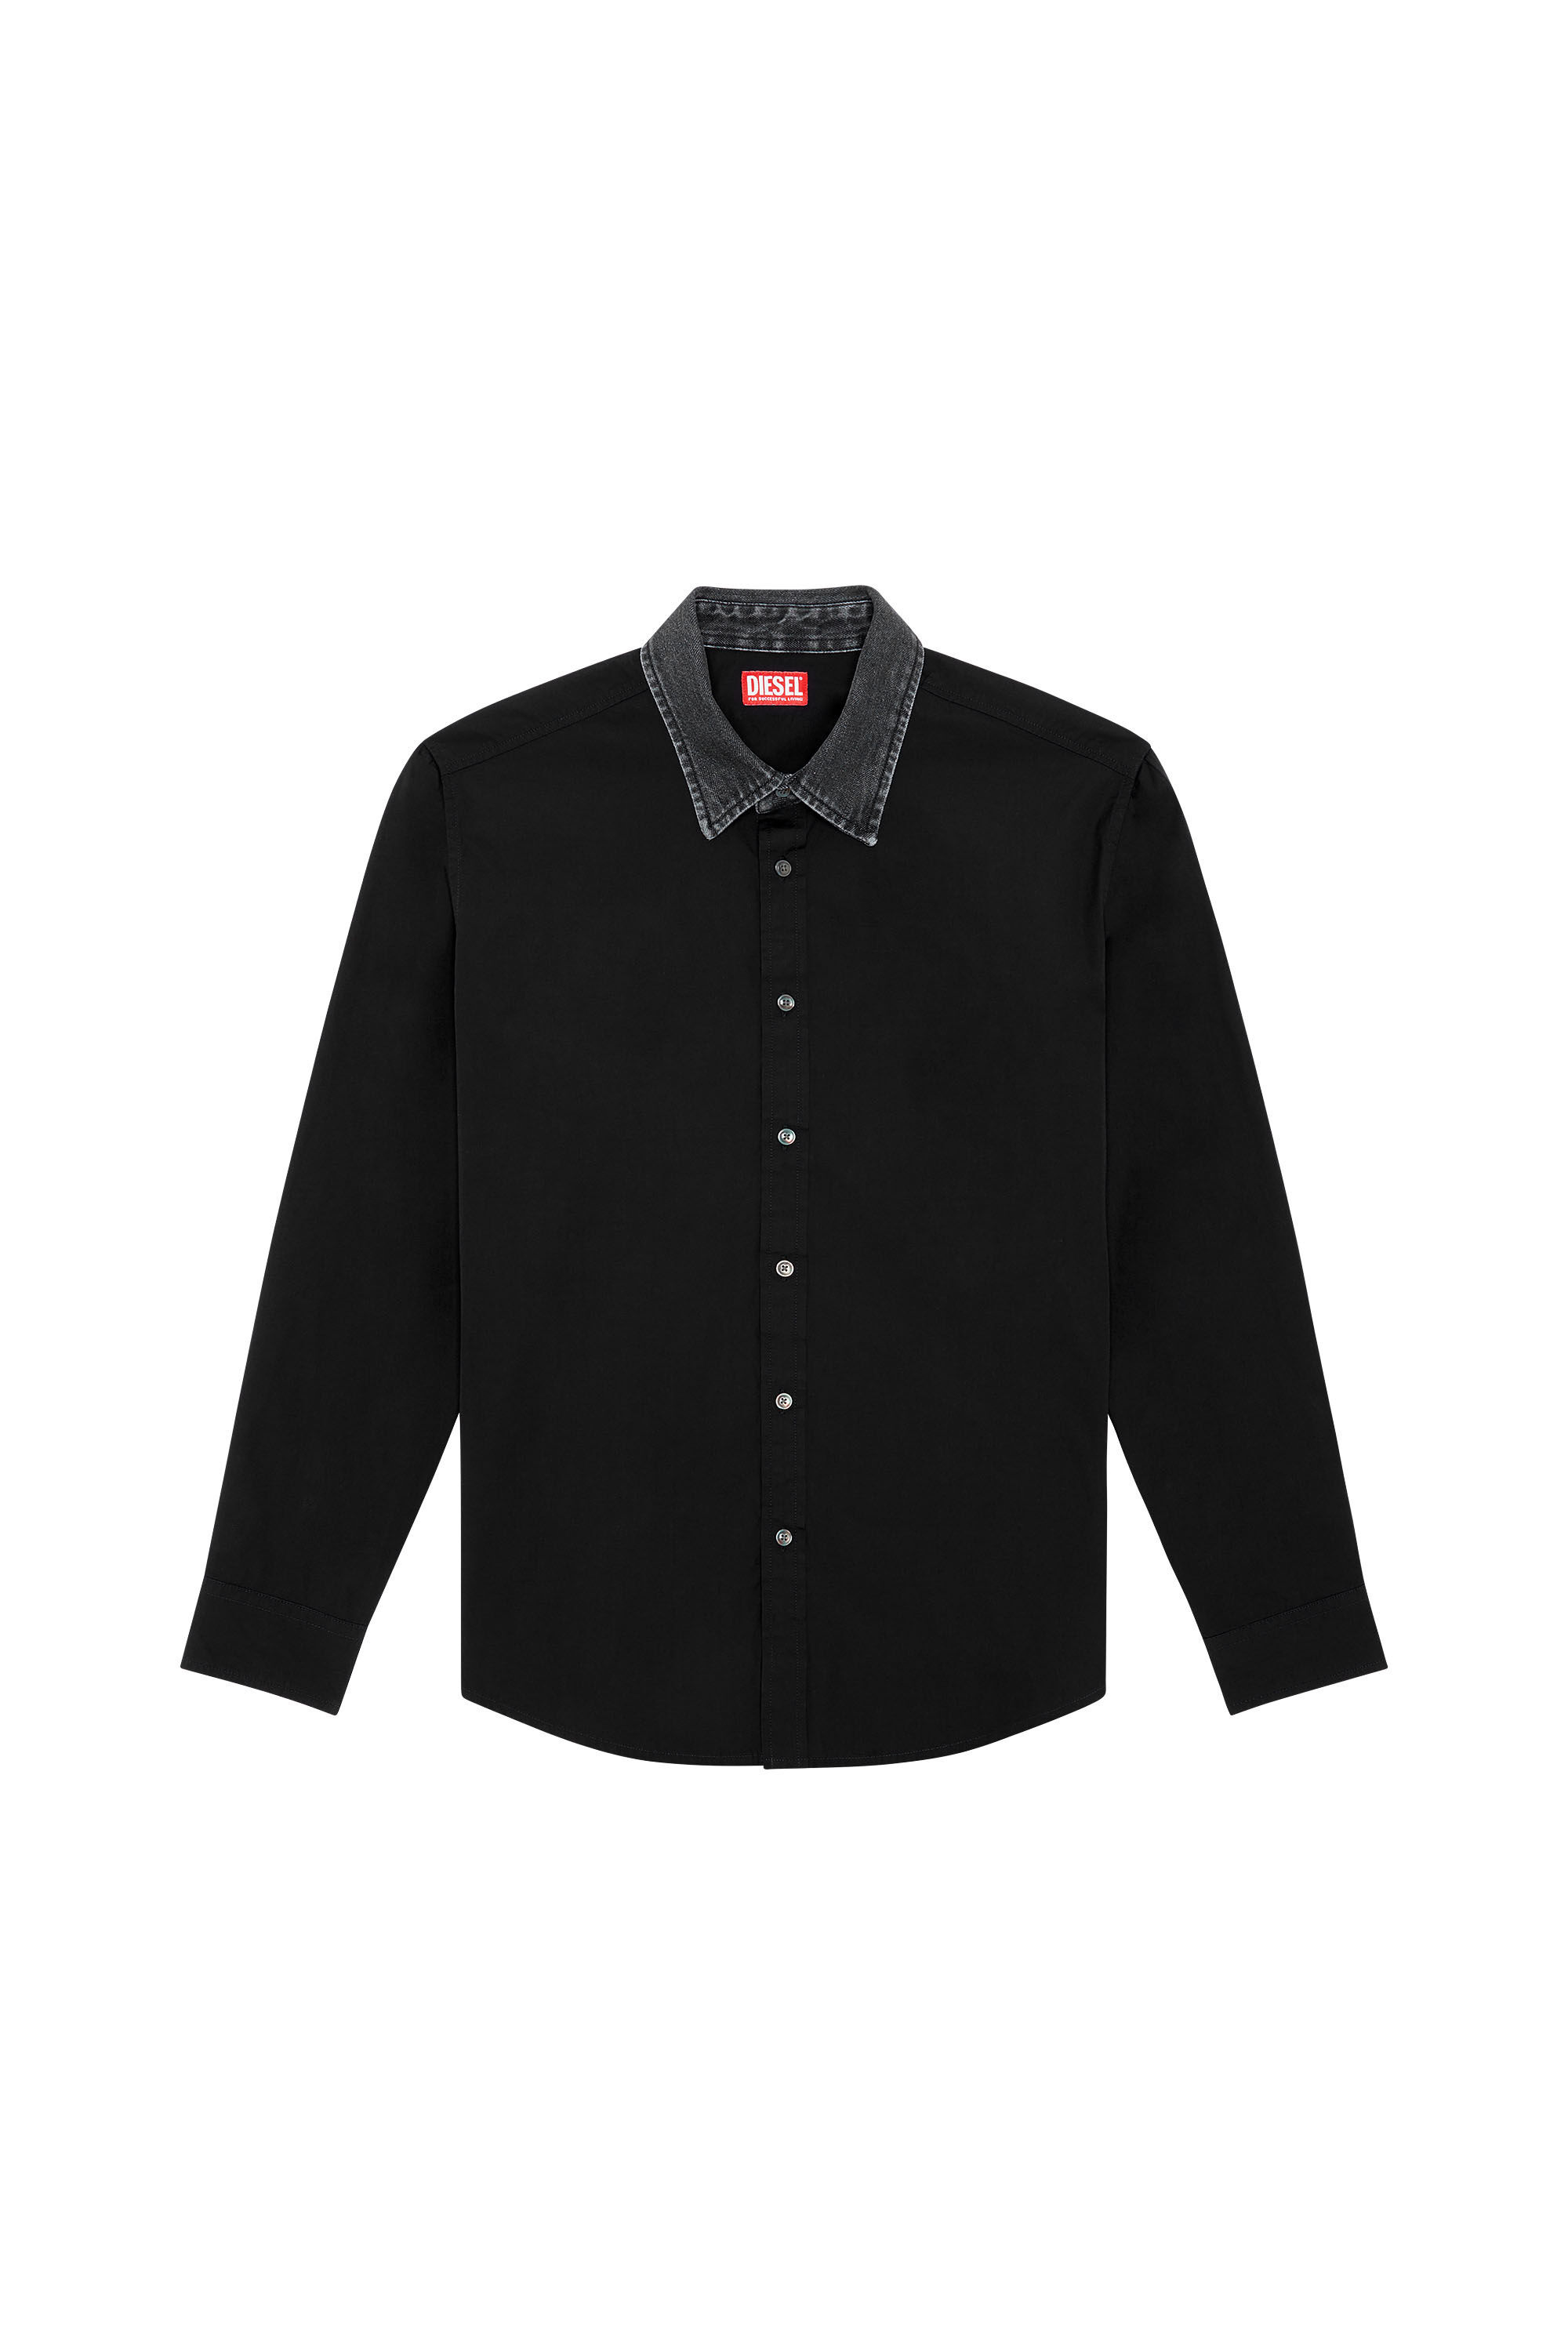 Men's Cotton shirt with denim collar | Black | Diesel